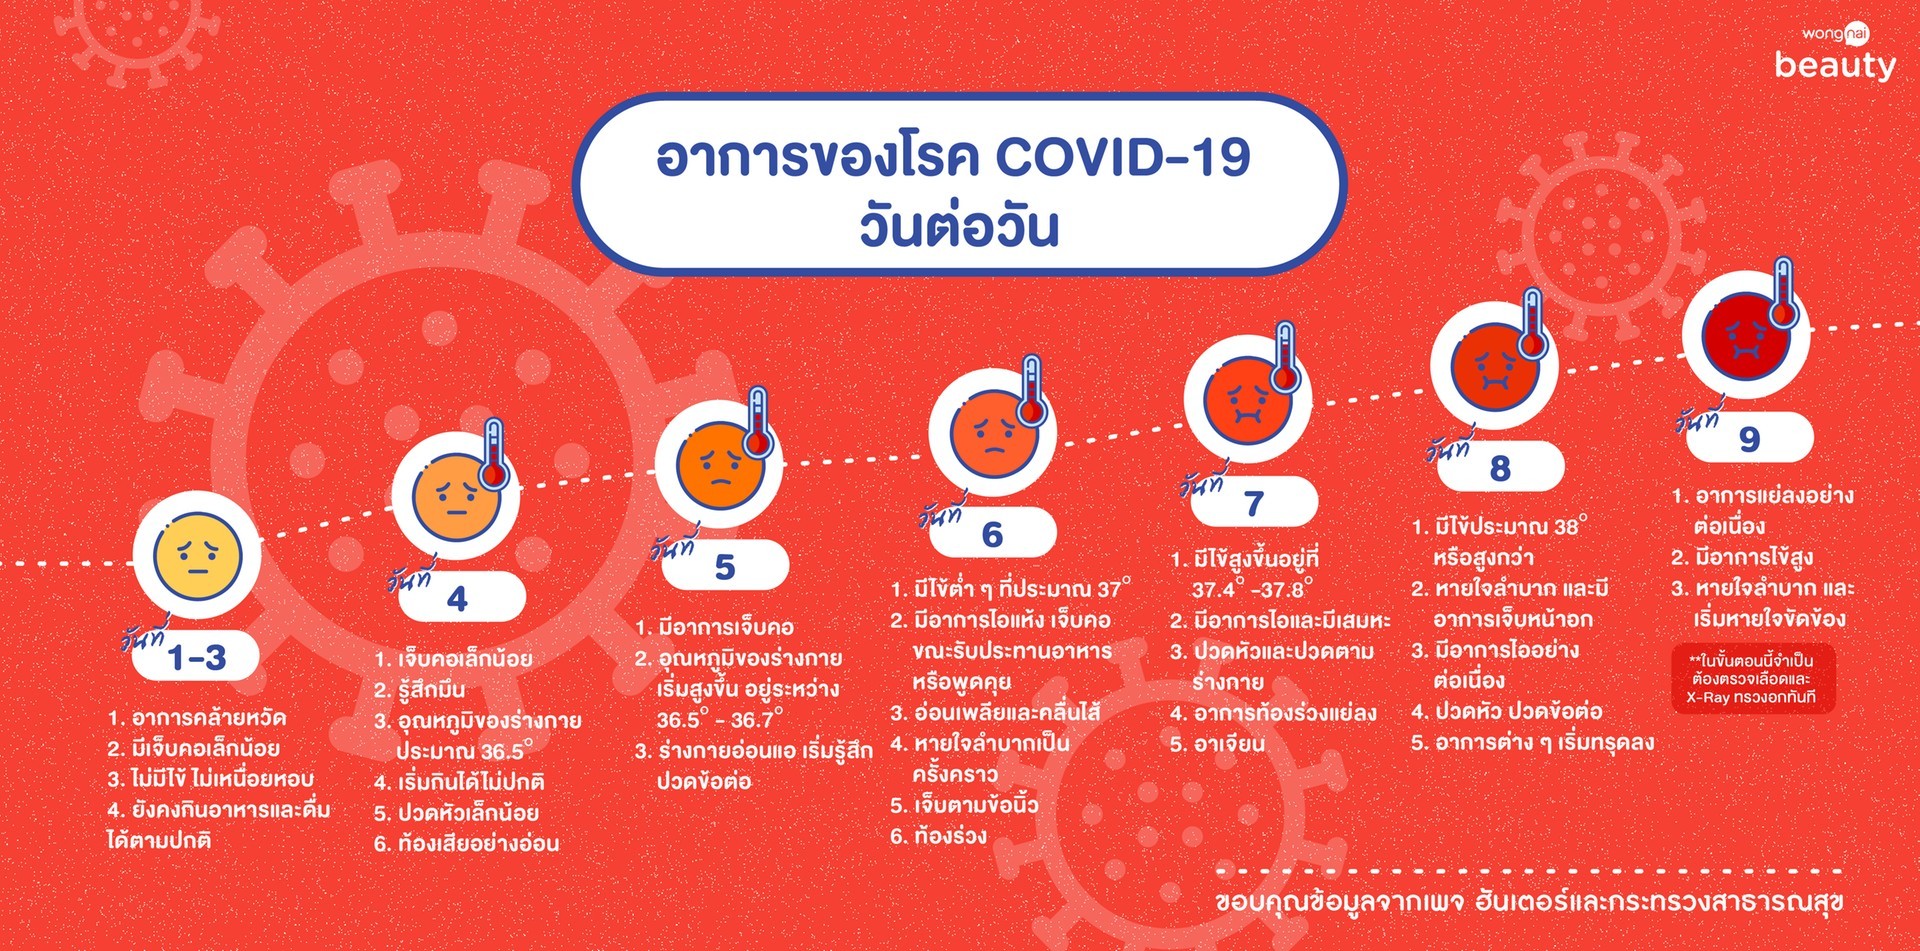 อาการของโรคโควิด-19  